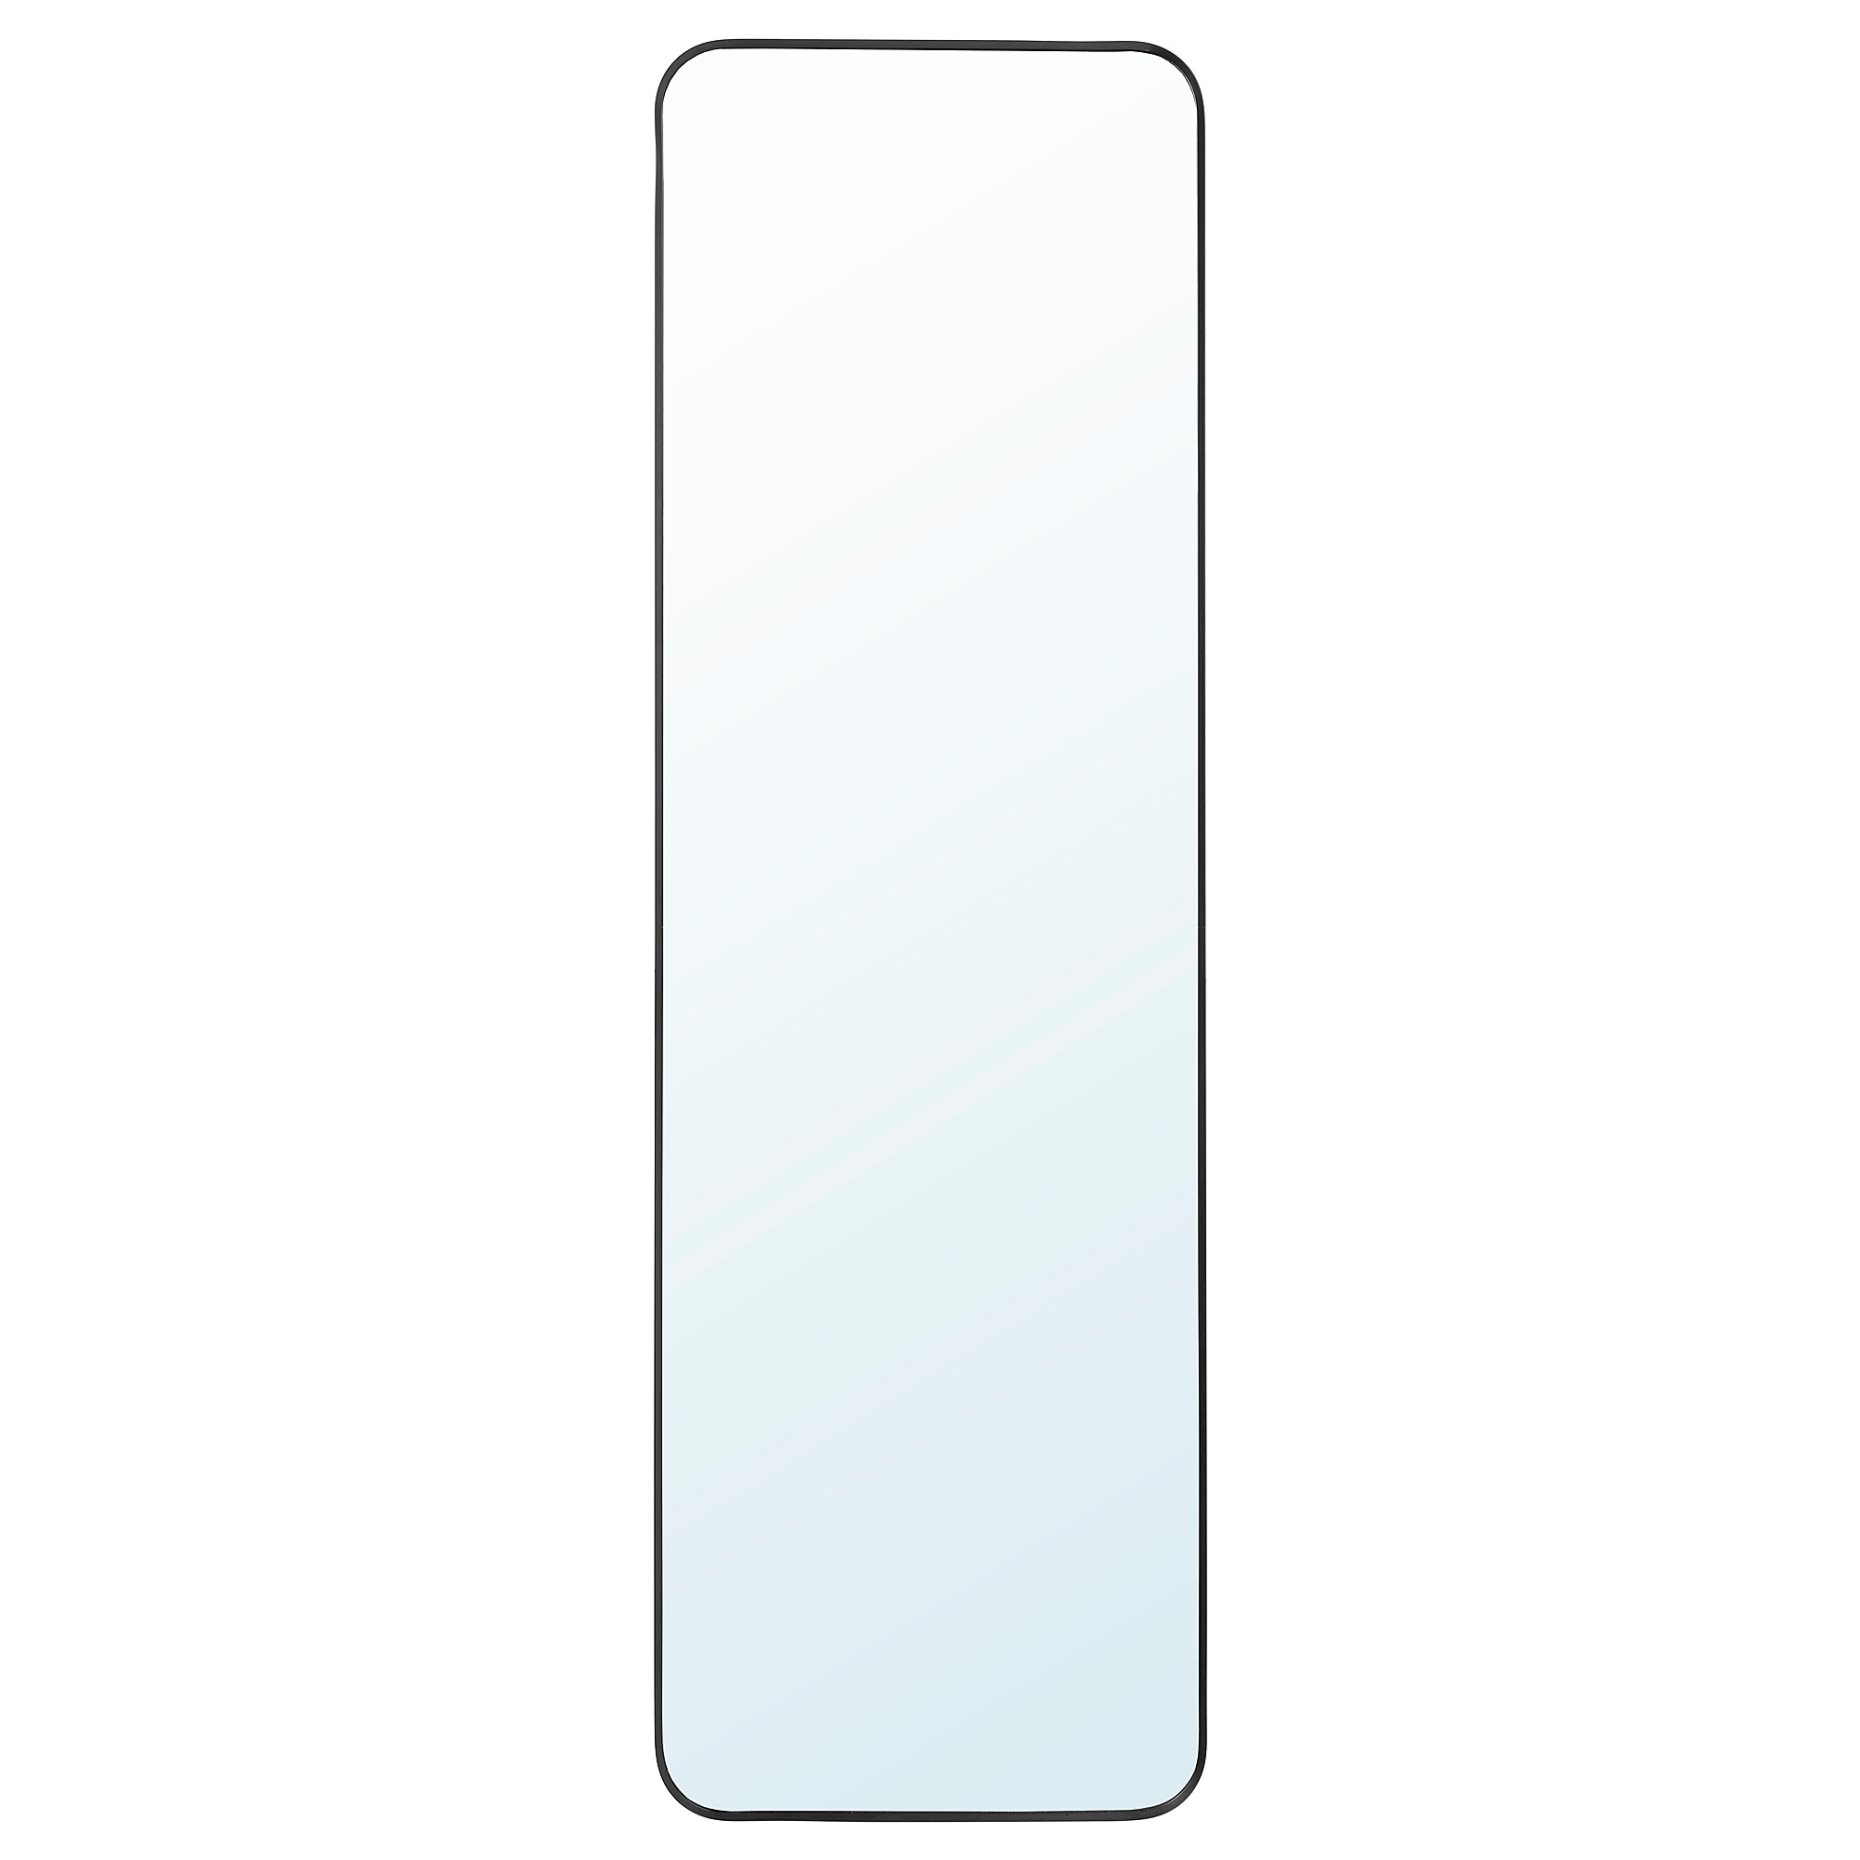 LINDBYN, καθρέφτης, 40x130 cm, 204.586.15